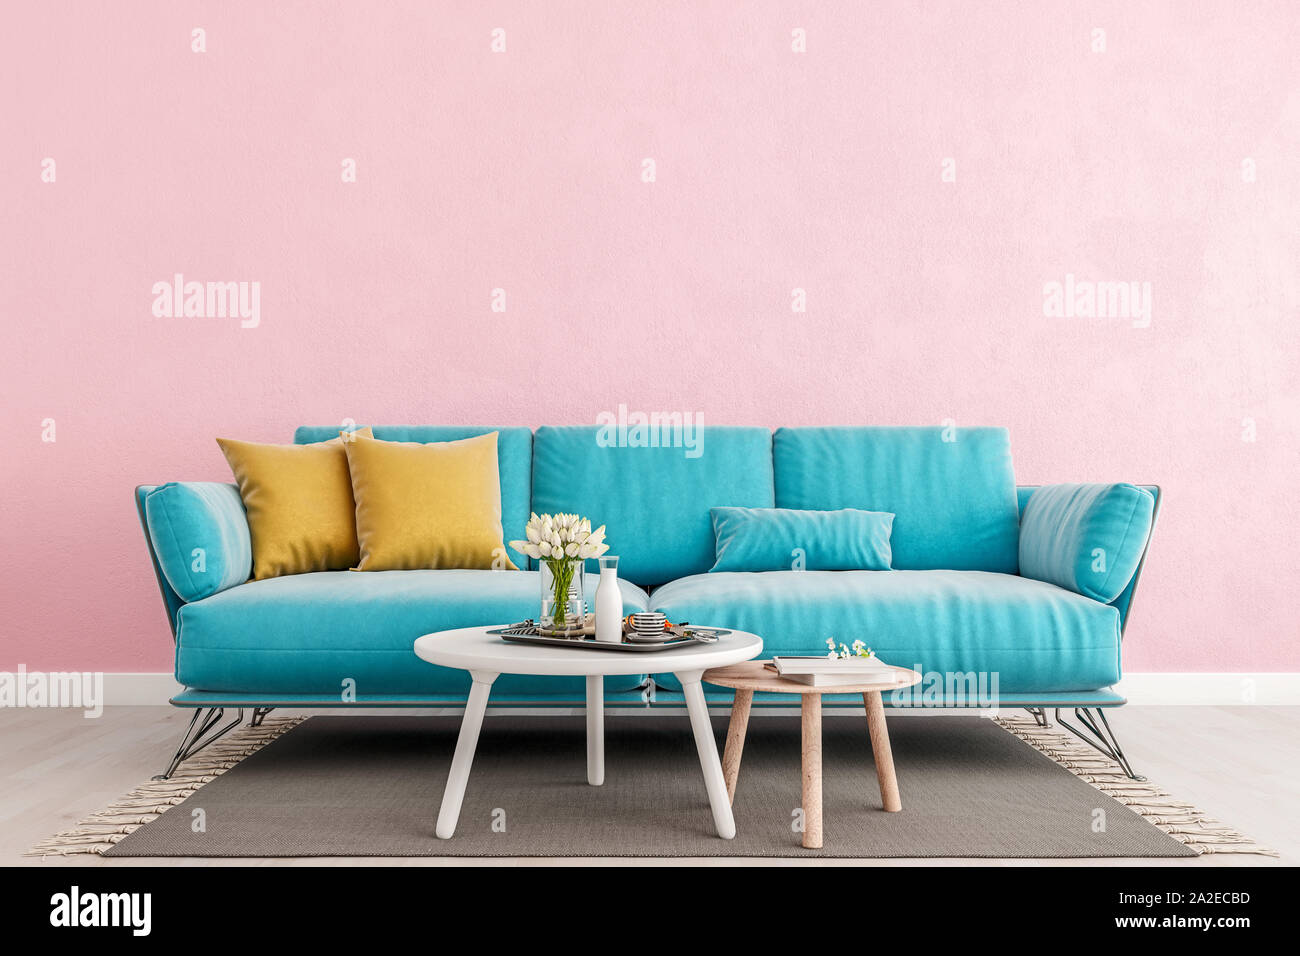 Soggiorno rosa millenario parete interna mock up con la luce blu divano, parete bianca e vuota con spazio libero sopra sulla parte superiore, 3D rendering 3D illustrazione Foto Stock